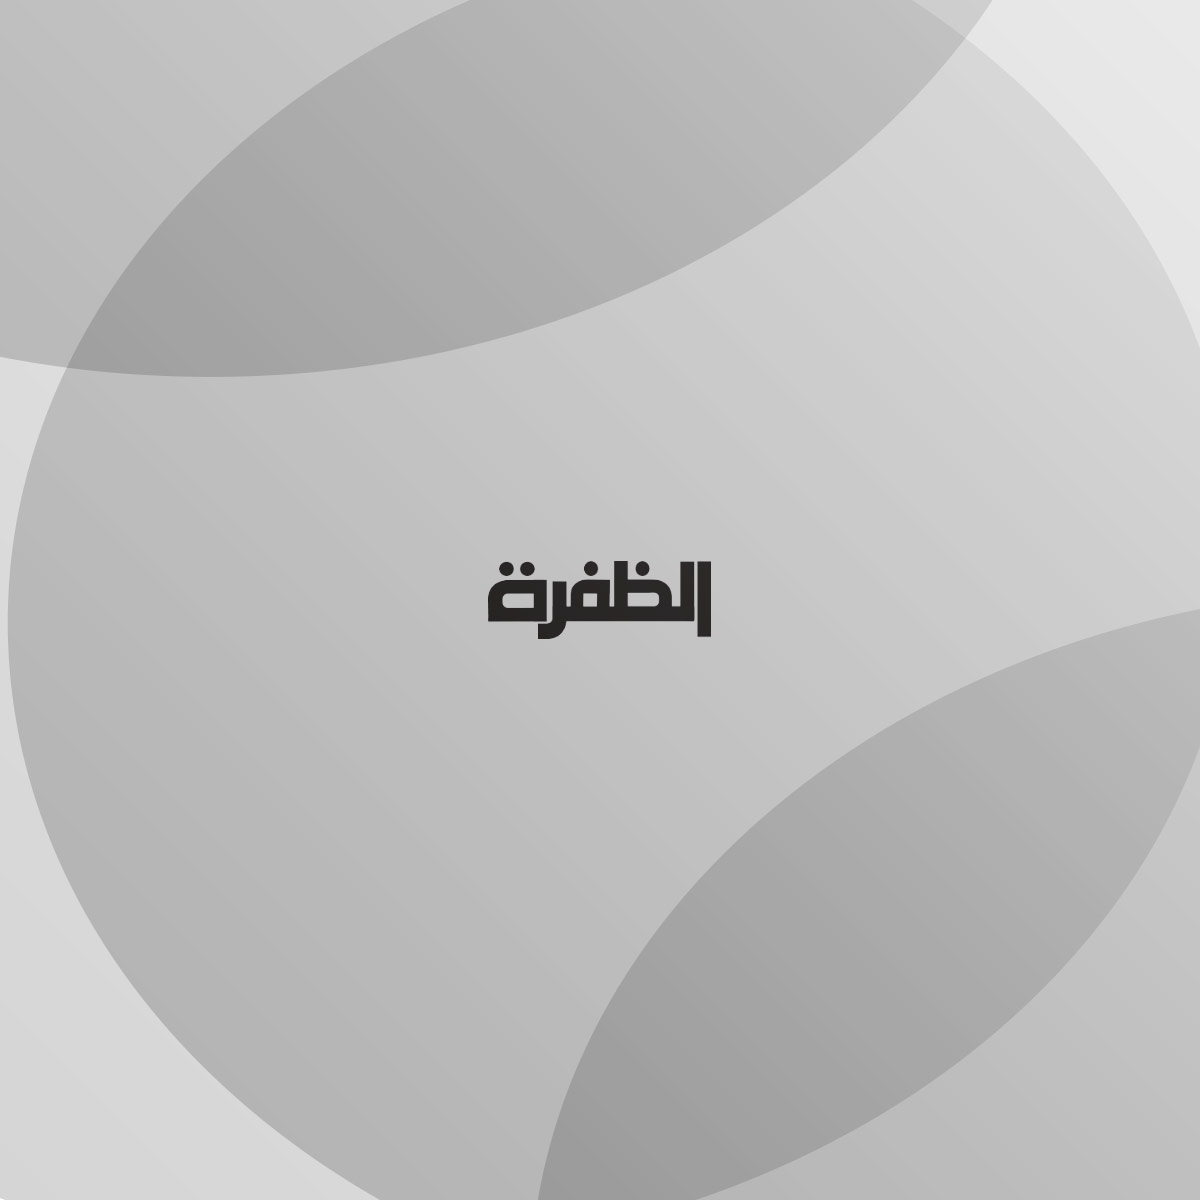 هيئة أبوظبي للدفاع المدني وأدنوك تتعاونان لرفع الاستعداد والجاهزية للطوارئ في المنشآت الحيوية في الإمارة